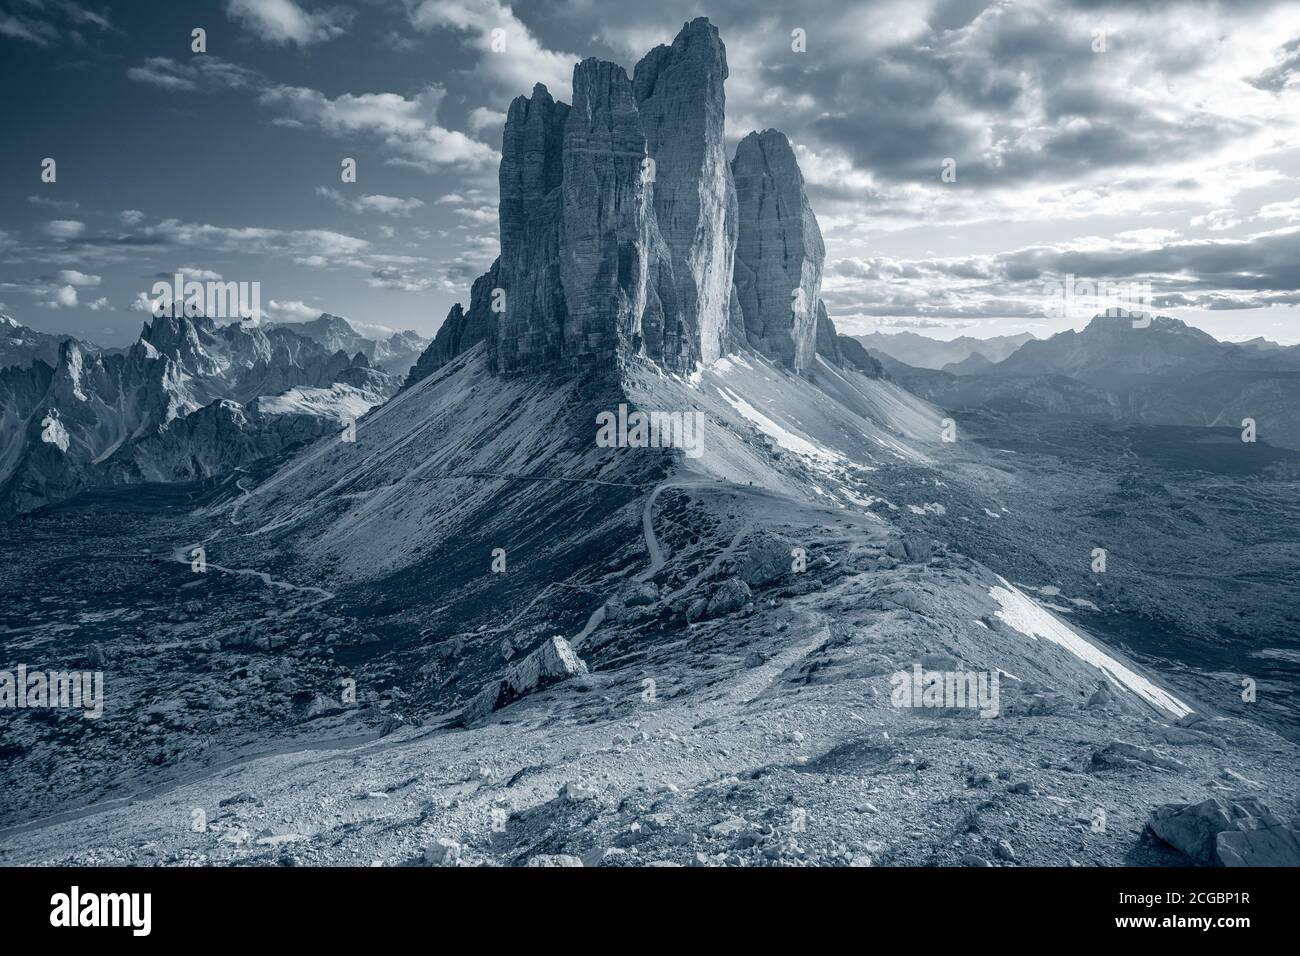 Trois pics de Lavaredo. Image tonifiée des Dolomites italiens avec les trois célèbres sommets de Lavaredo (Tre cime di Lavaredo) Tyrol du Sud, Italie, Europe. Banque D'Images